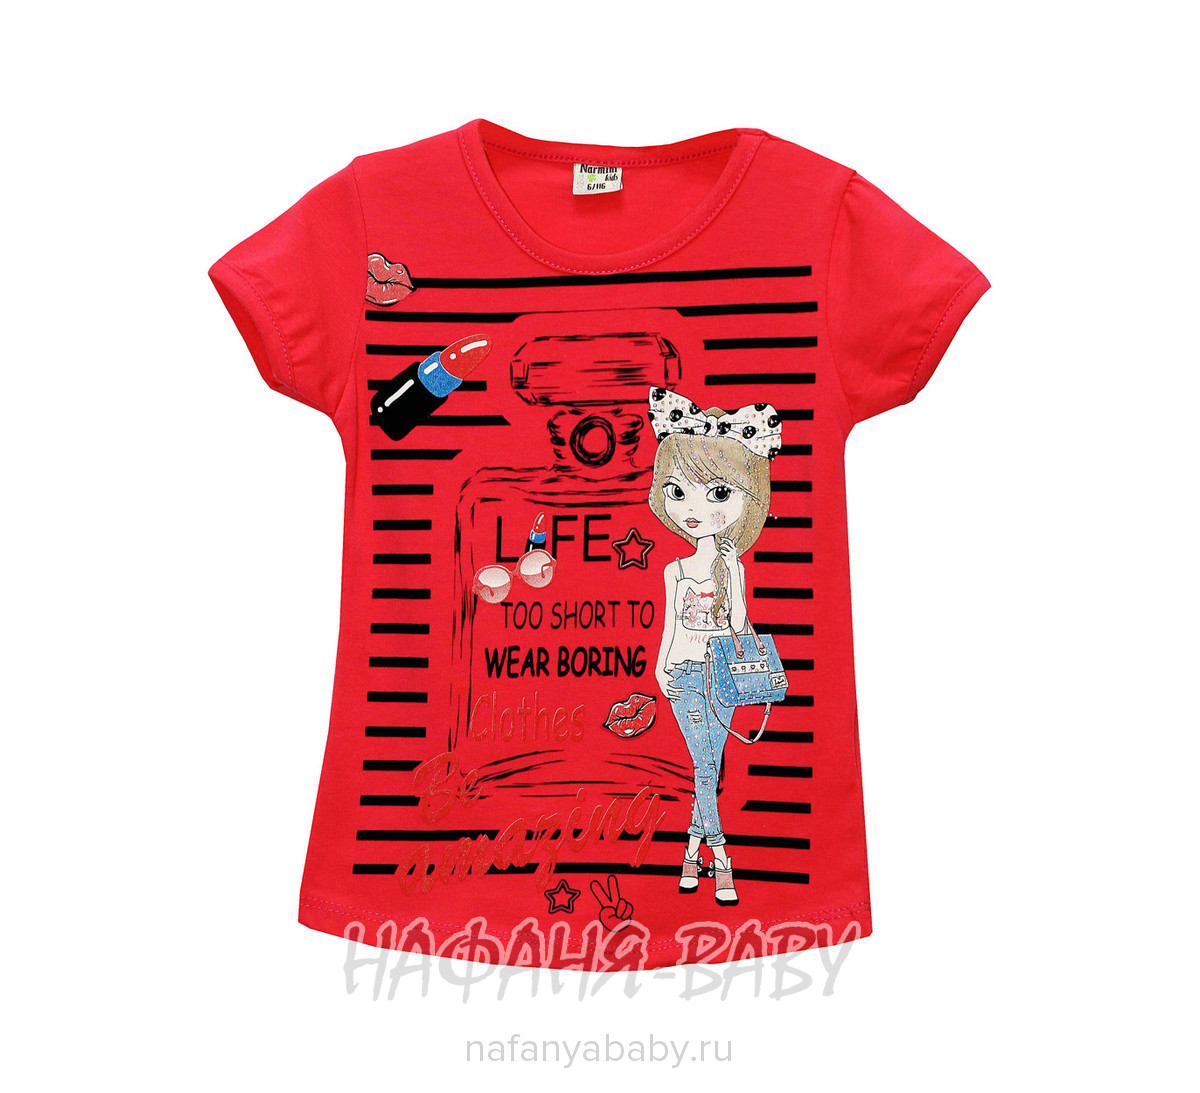 Детская футболка NARMINI арт: 4678, 1-4 года, 5-9 лет, цвет кремовый, оптом Турция